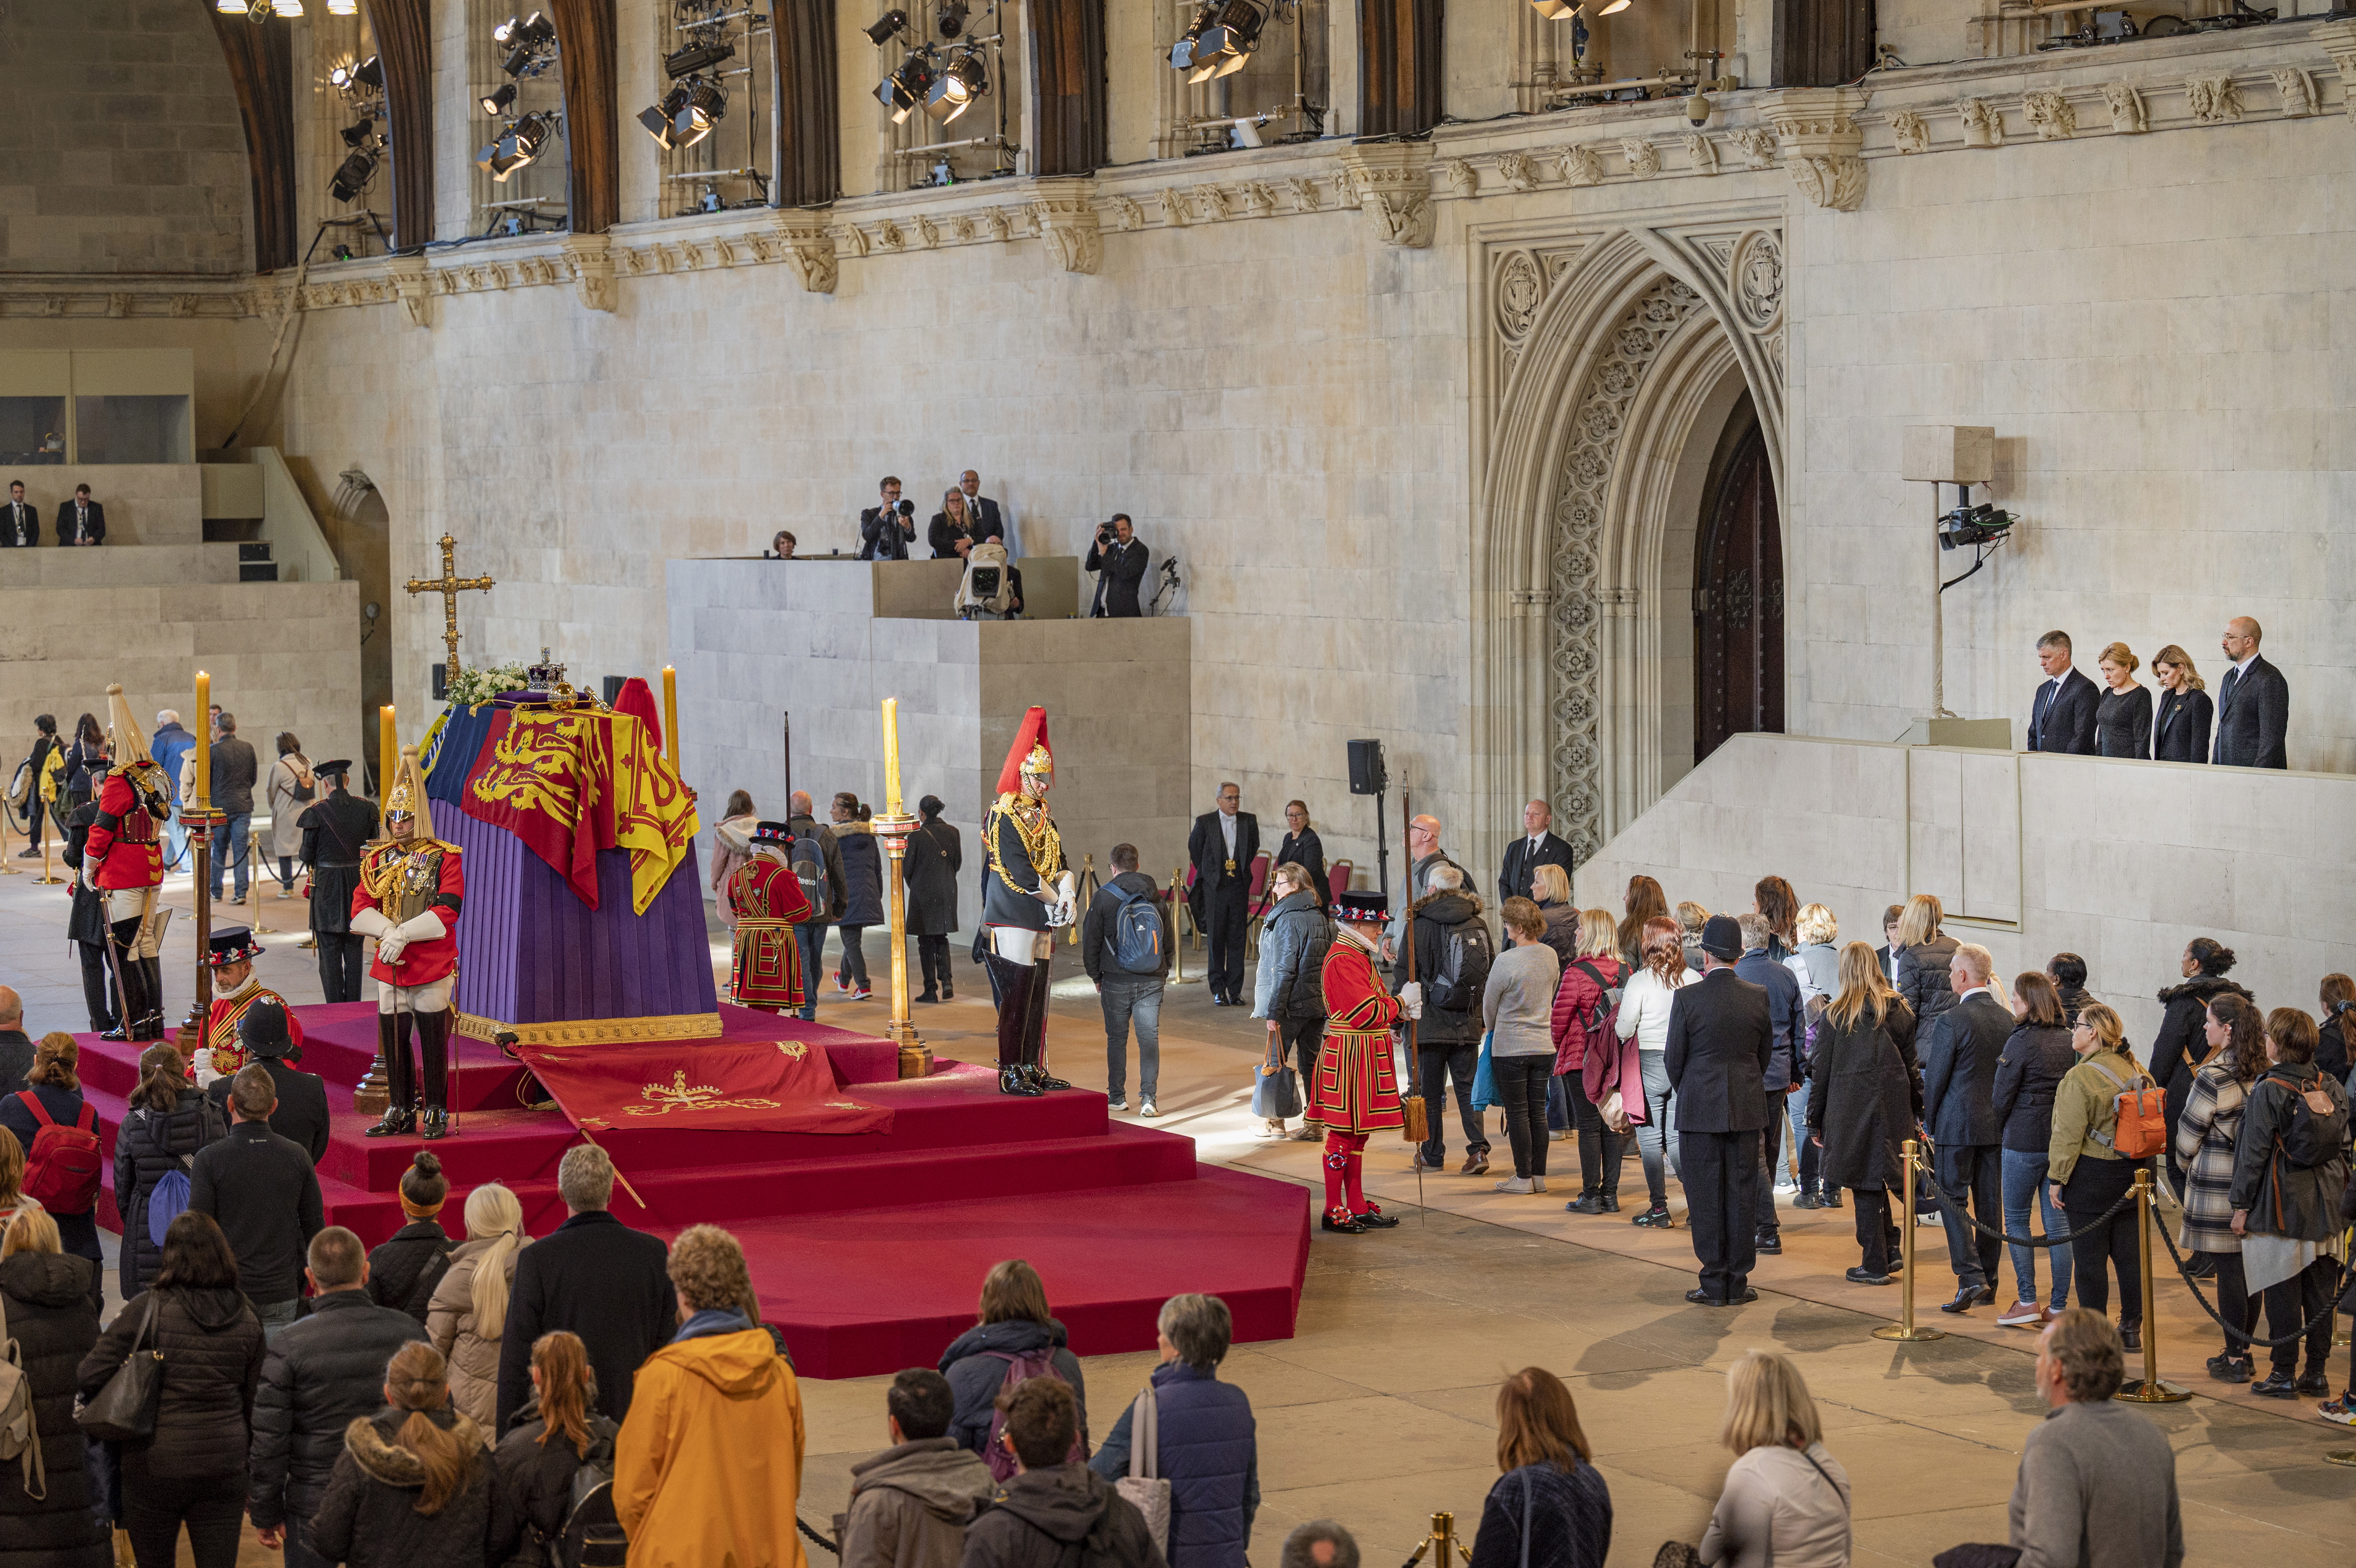 Velatorio de la reina Isabel II de Gran Bretaña en el Palacio de Westminster en Londres, Gran Bretaña. El velatorio de la reina terminará en la mañana del funeral de Estado, el 19 de septiembre. (Foto Prensa Libre: EFE)